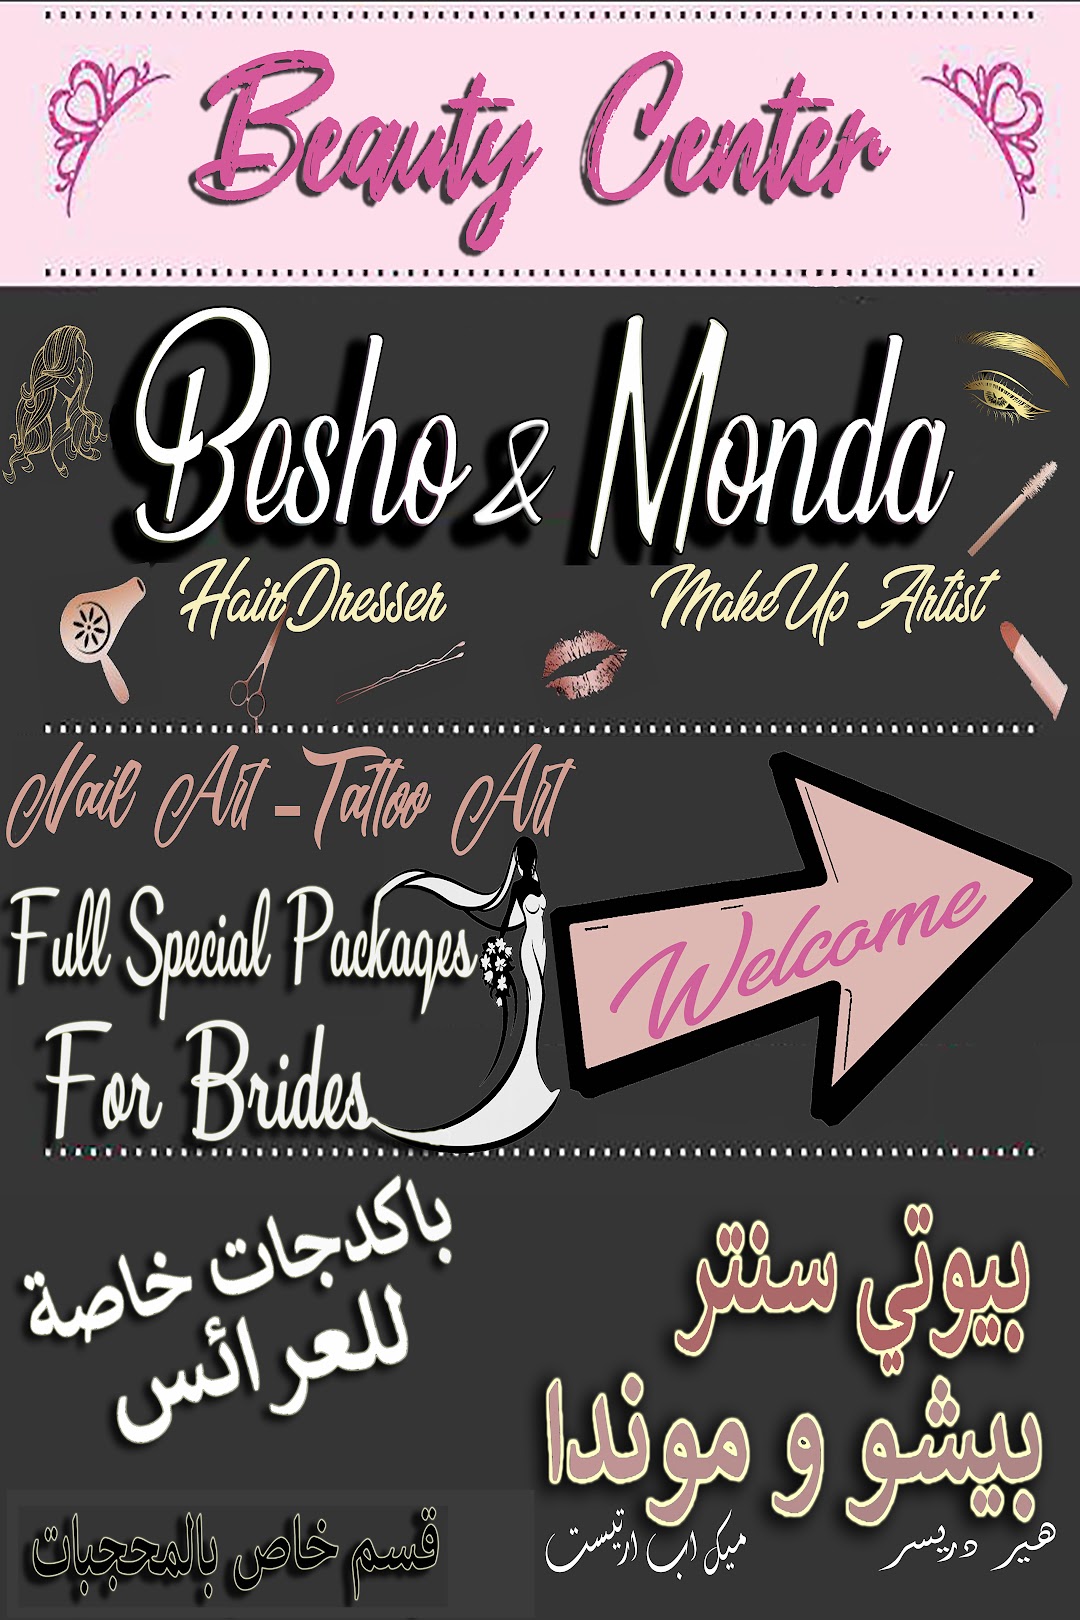 beauty center besho&monda